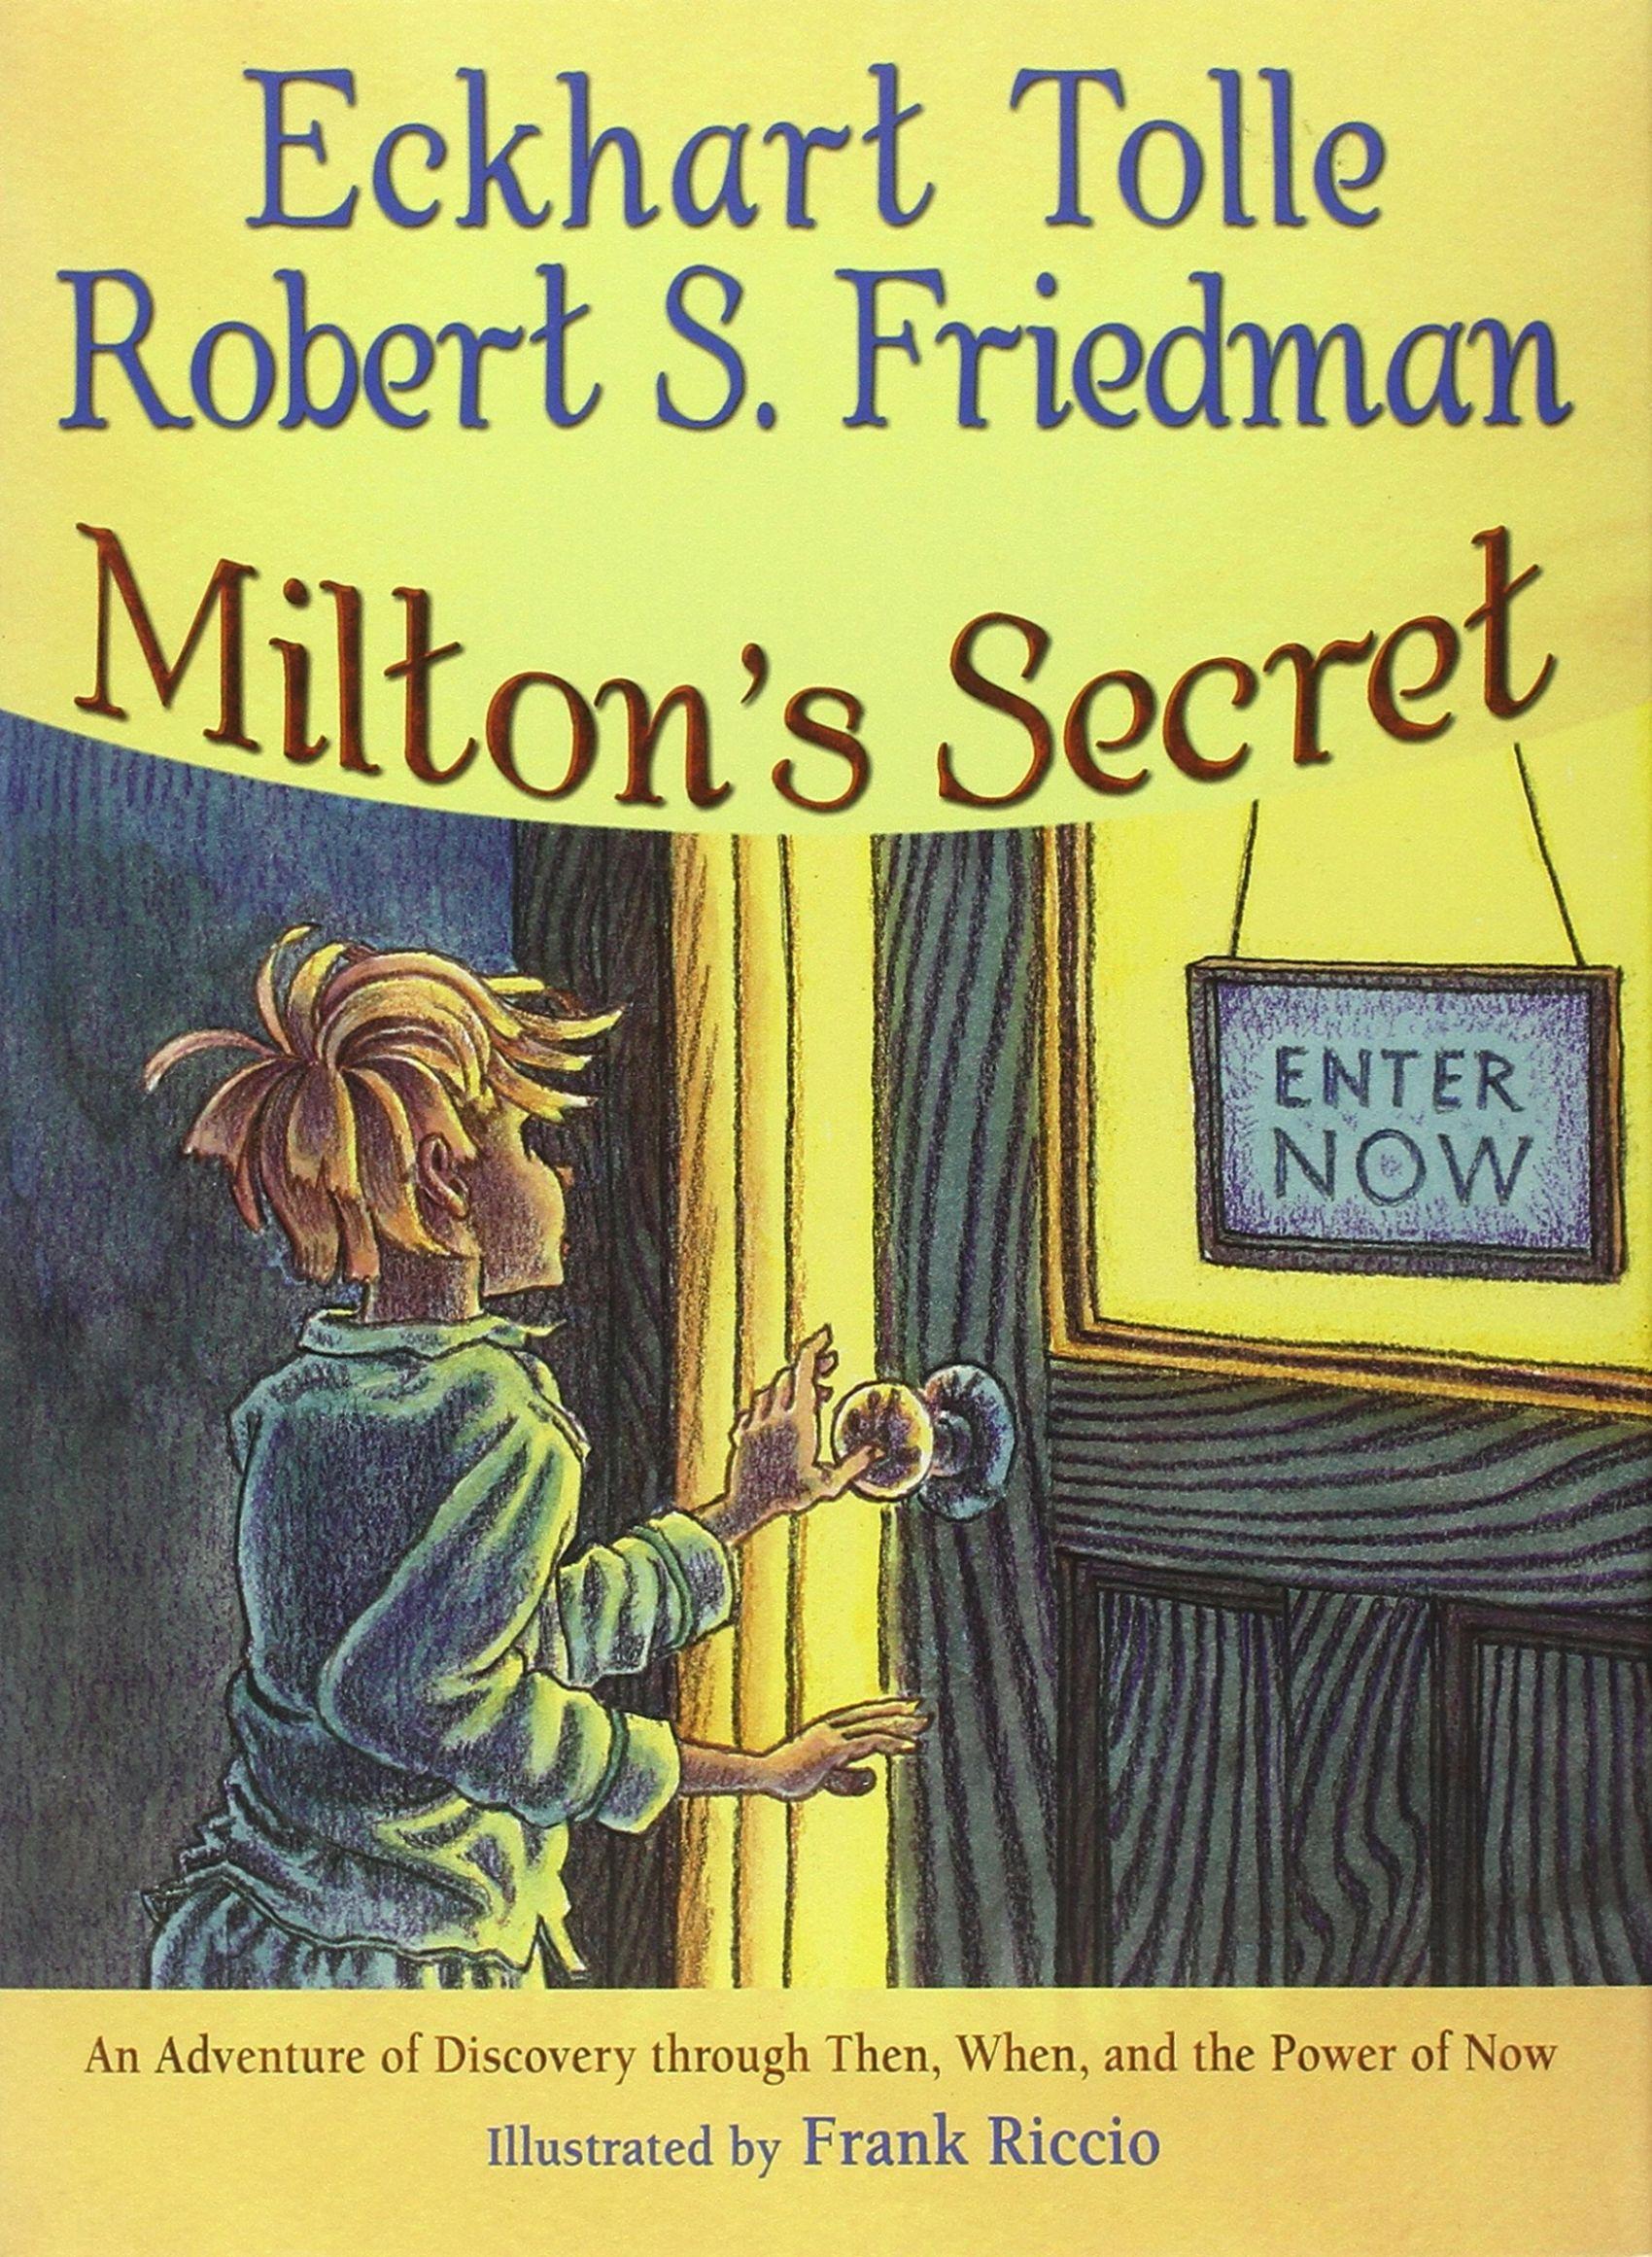 Milton'S Secret